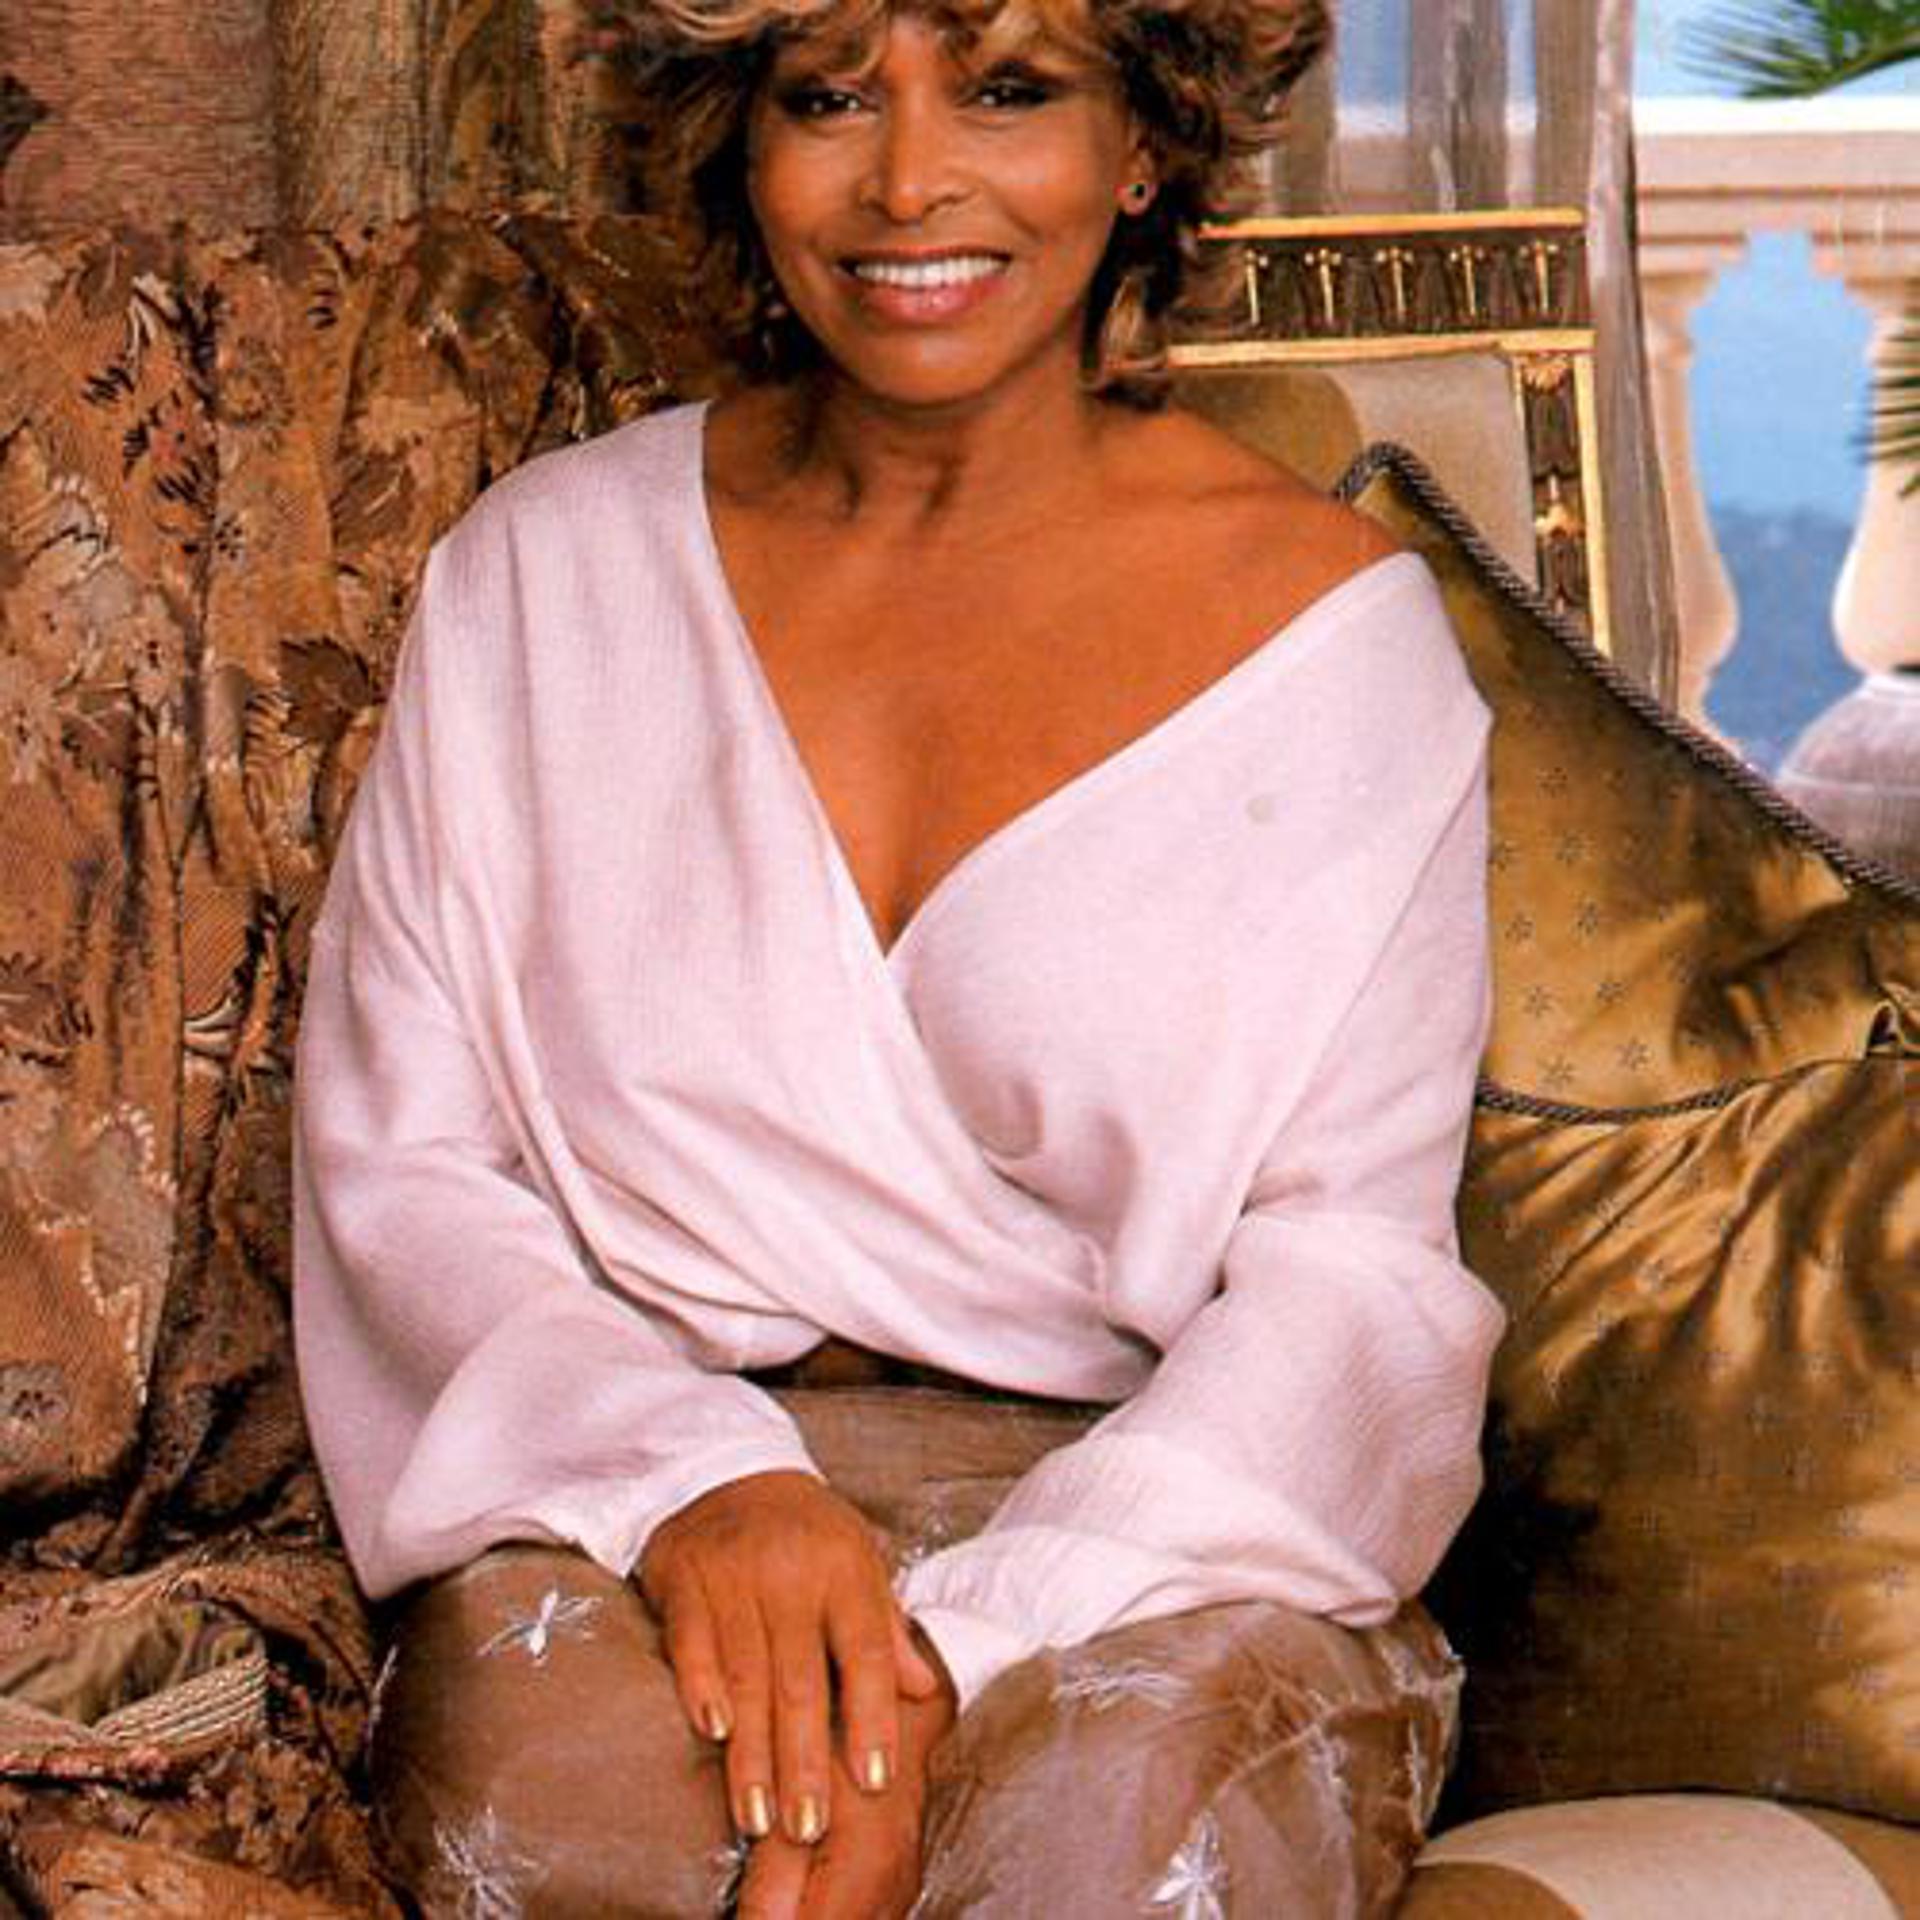 Tina turner simply. Tina Turner 2000.